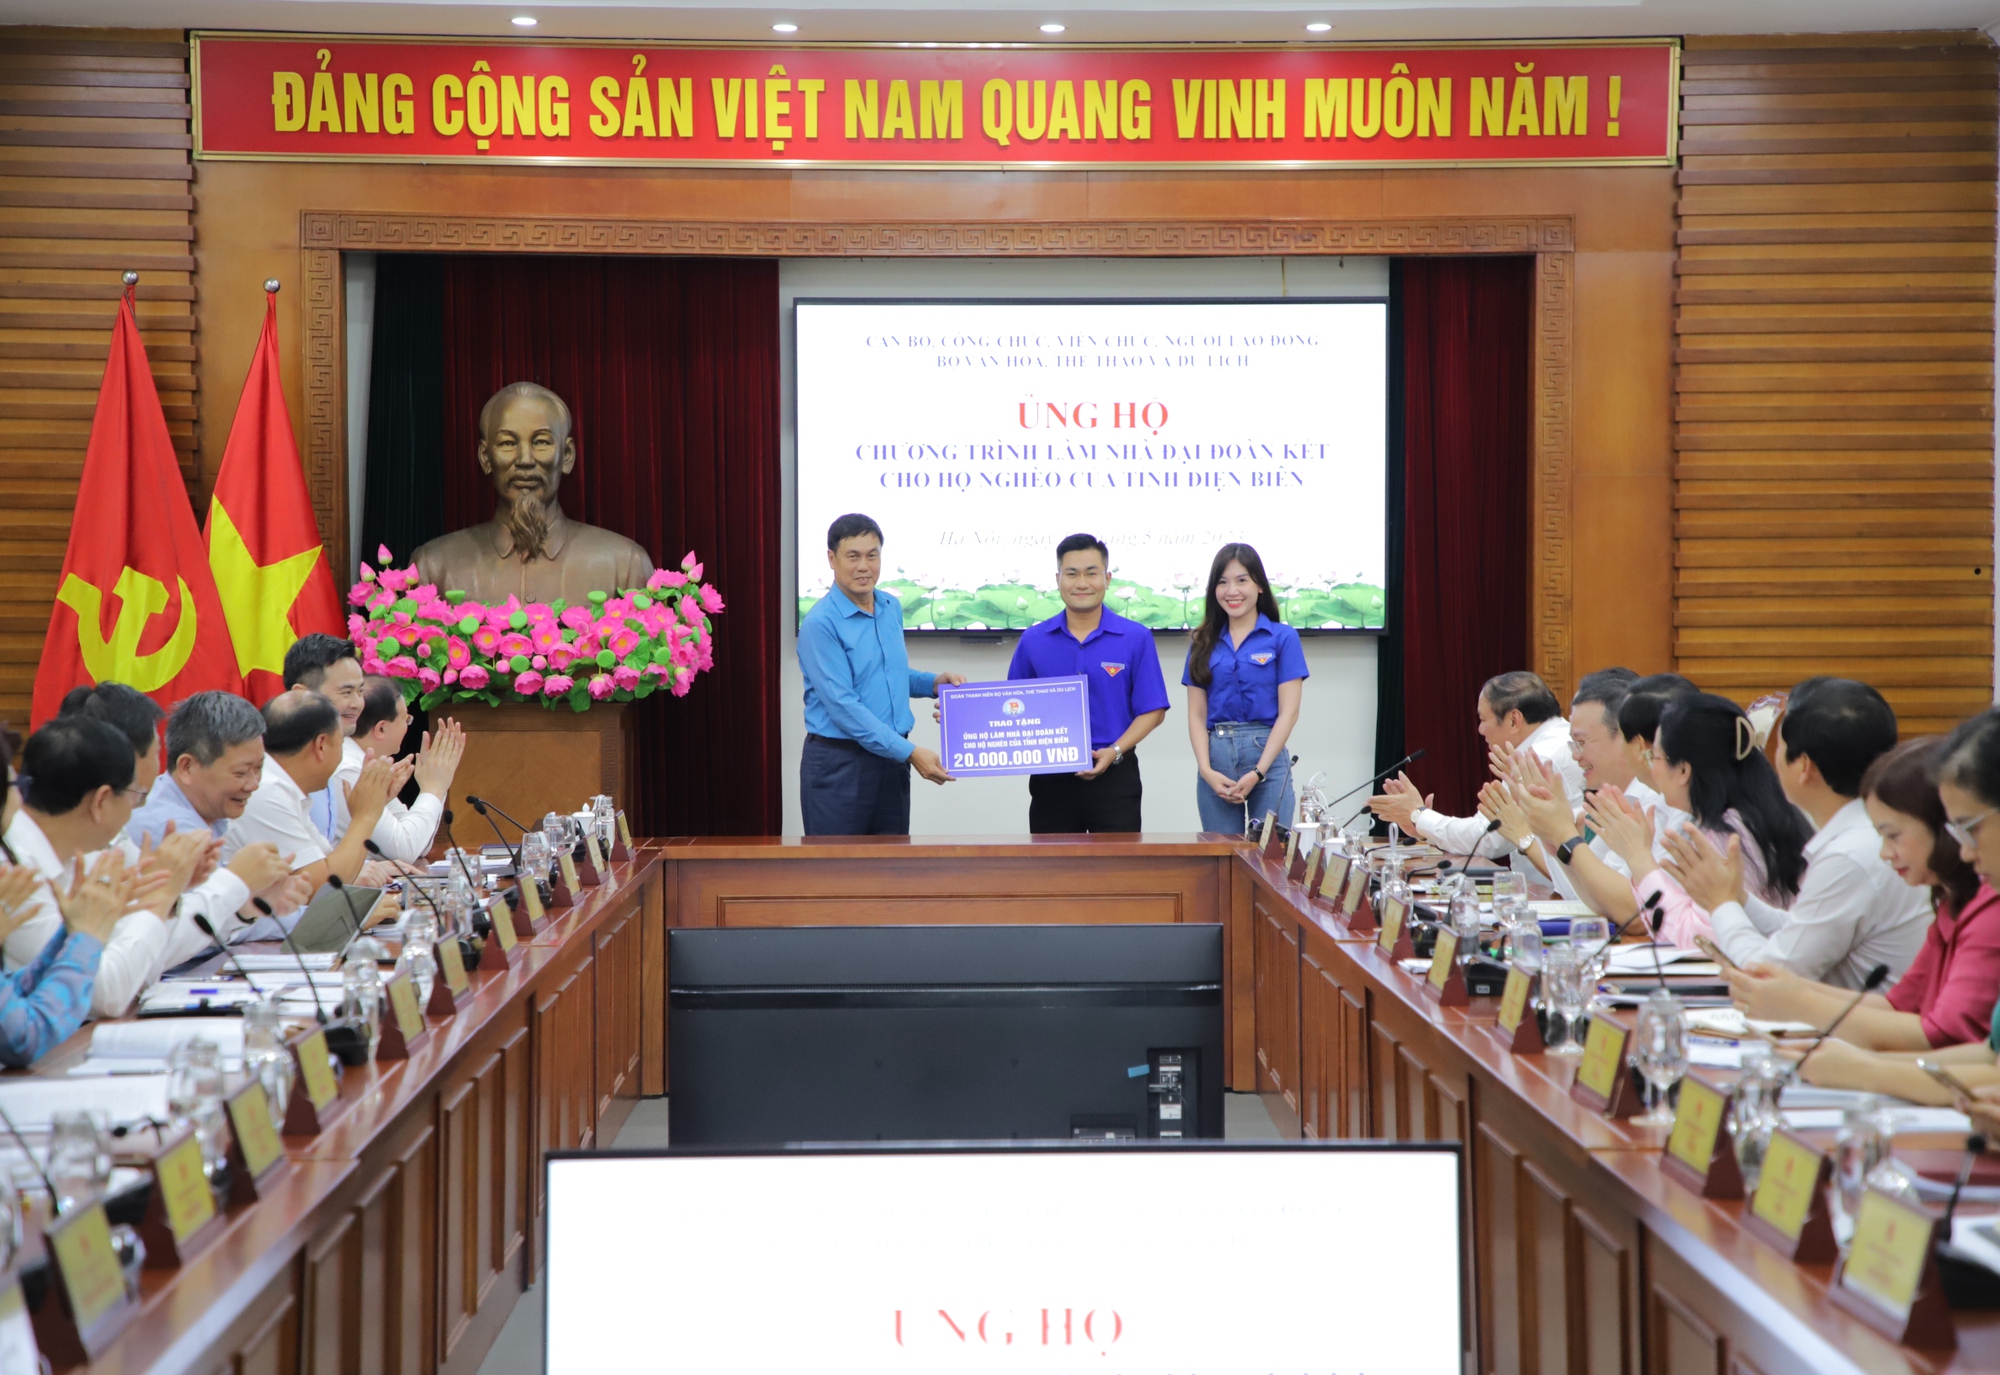 Bộ VHTTDL ủng hộ Chương trình xây nhà đại đoàn kết cho hộ nghèo của tỉnh Điện Biên - Ảnh 10.